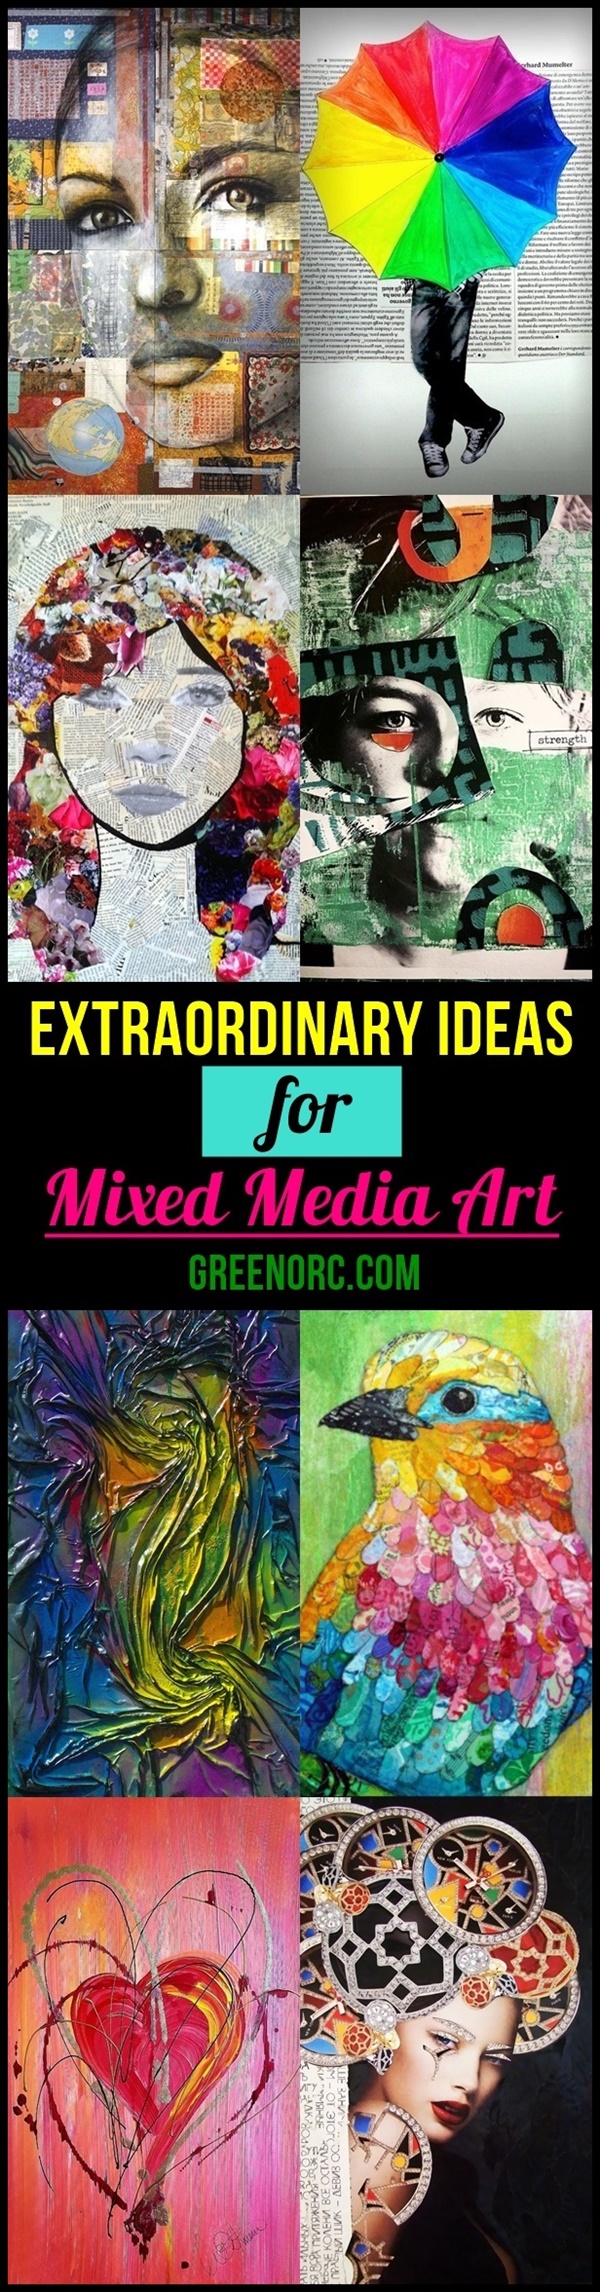 Extraordinary Ideas for Mixed Media Art